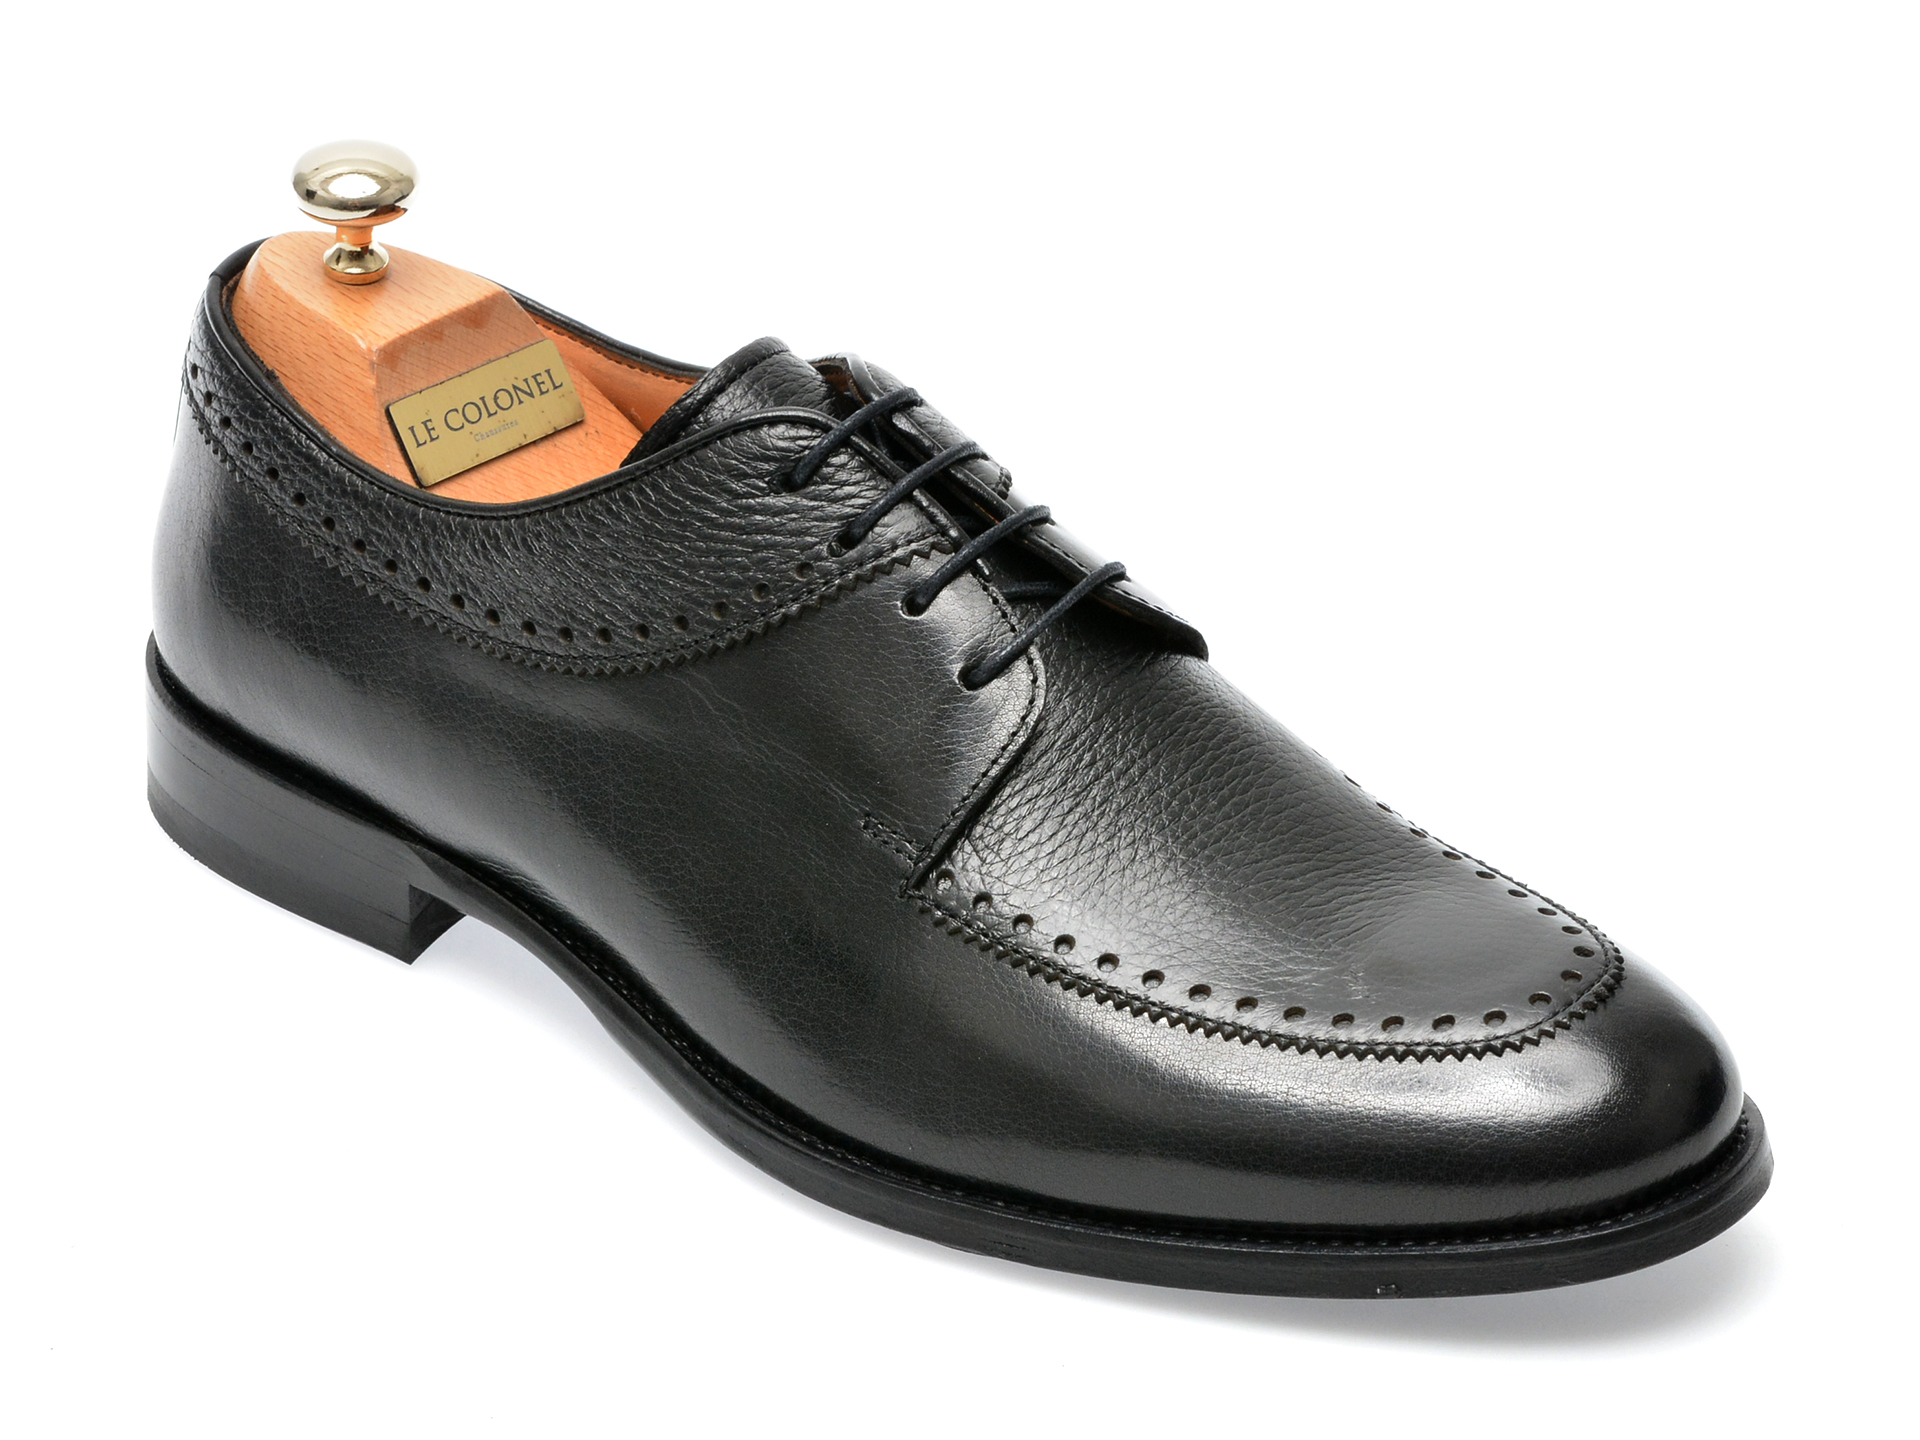 Pantofi LE COLONEL negri, 45266, din piele naturala Le Colonel Le Colonel